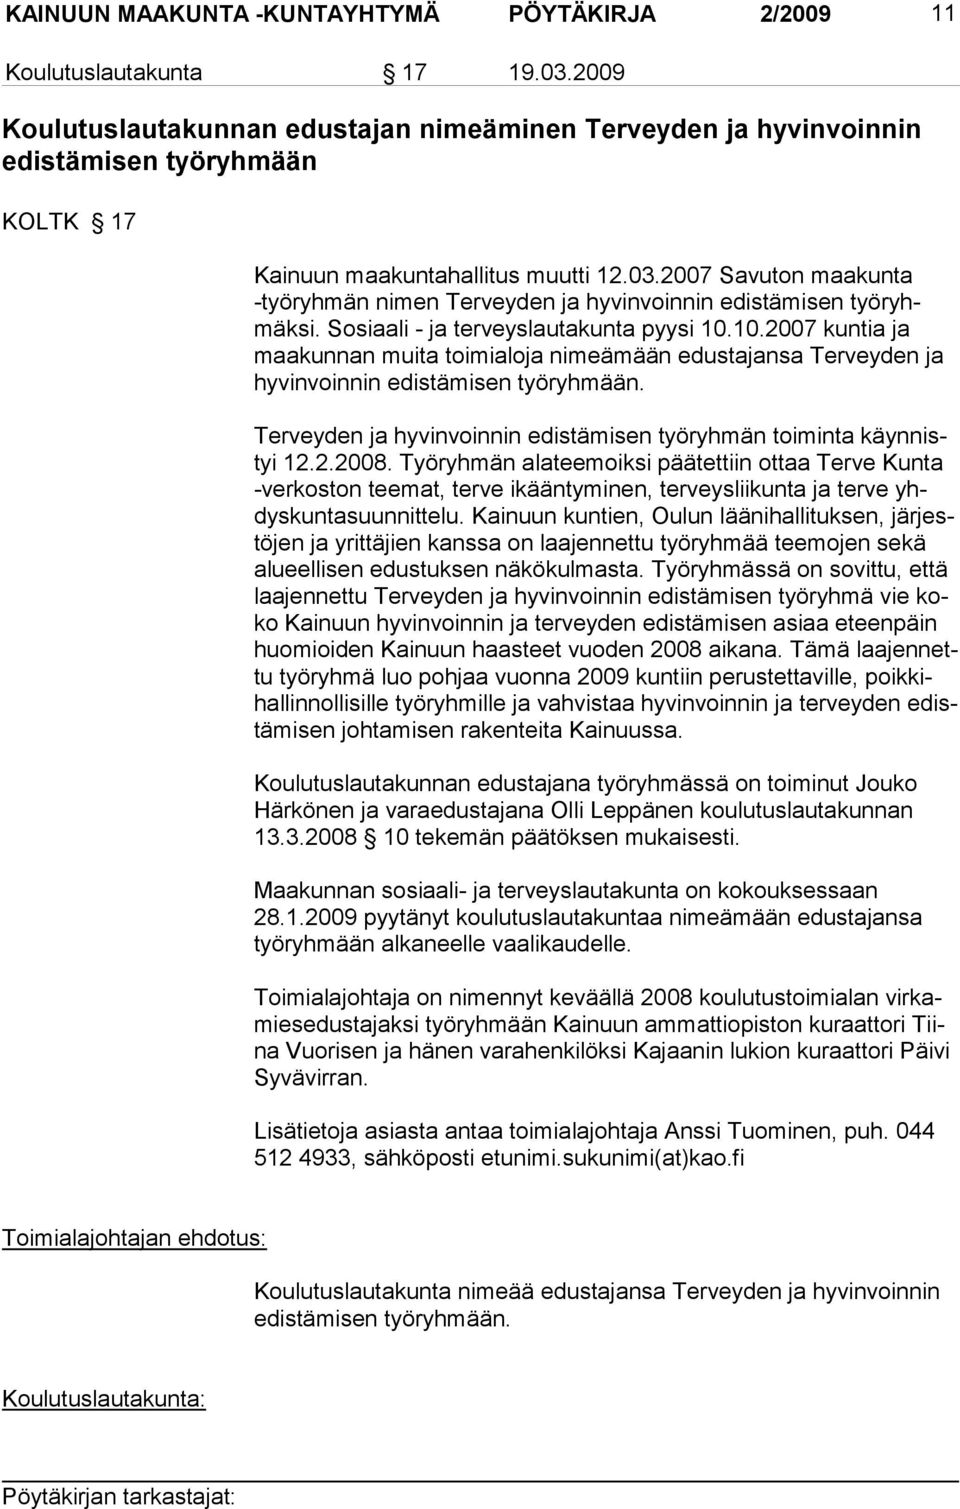 2007 Savuton maakunta -työryhmän nimen Tervey den ja hyvinvoin nin edistämi sen työryhmäksi. Sosiaali - ja terveyslauta kunta pyysi 10.